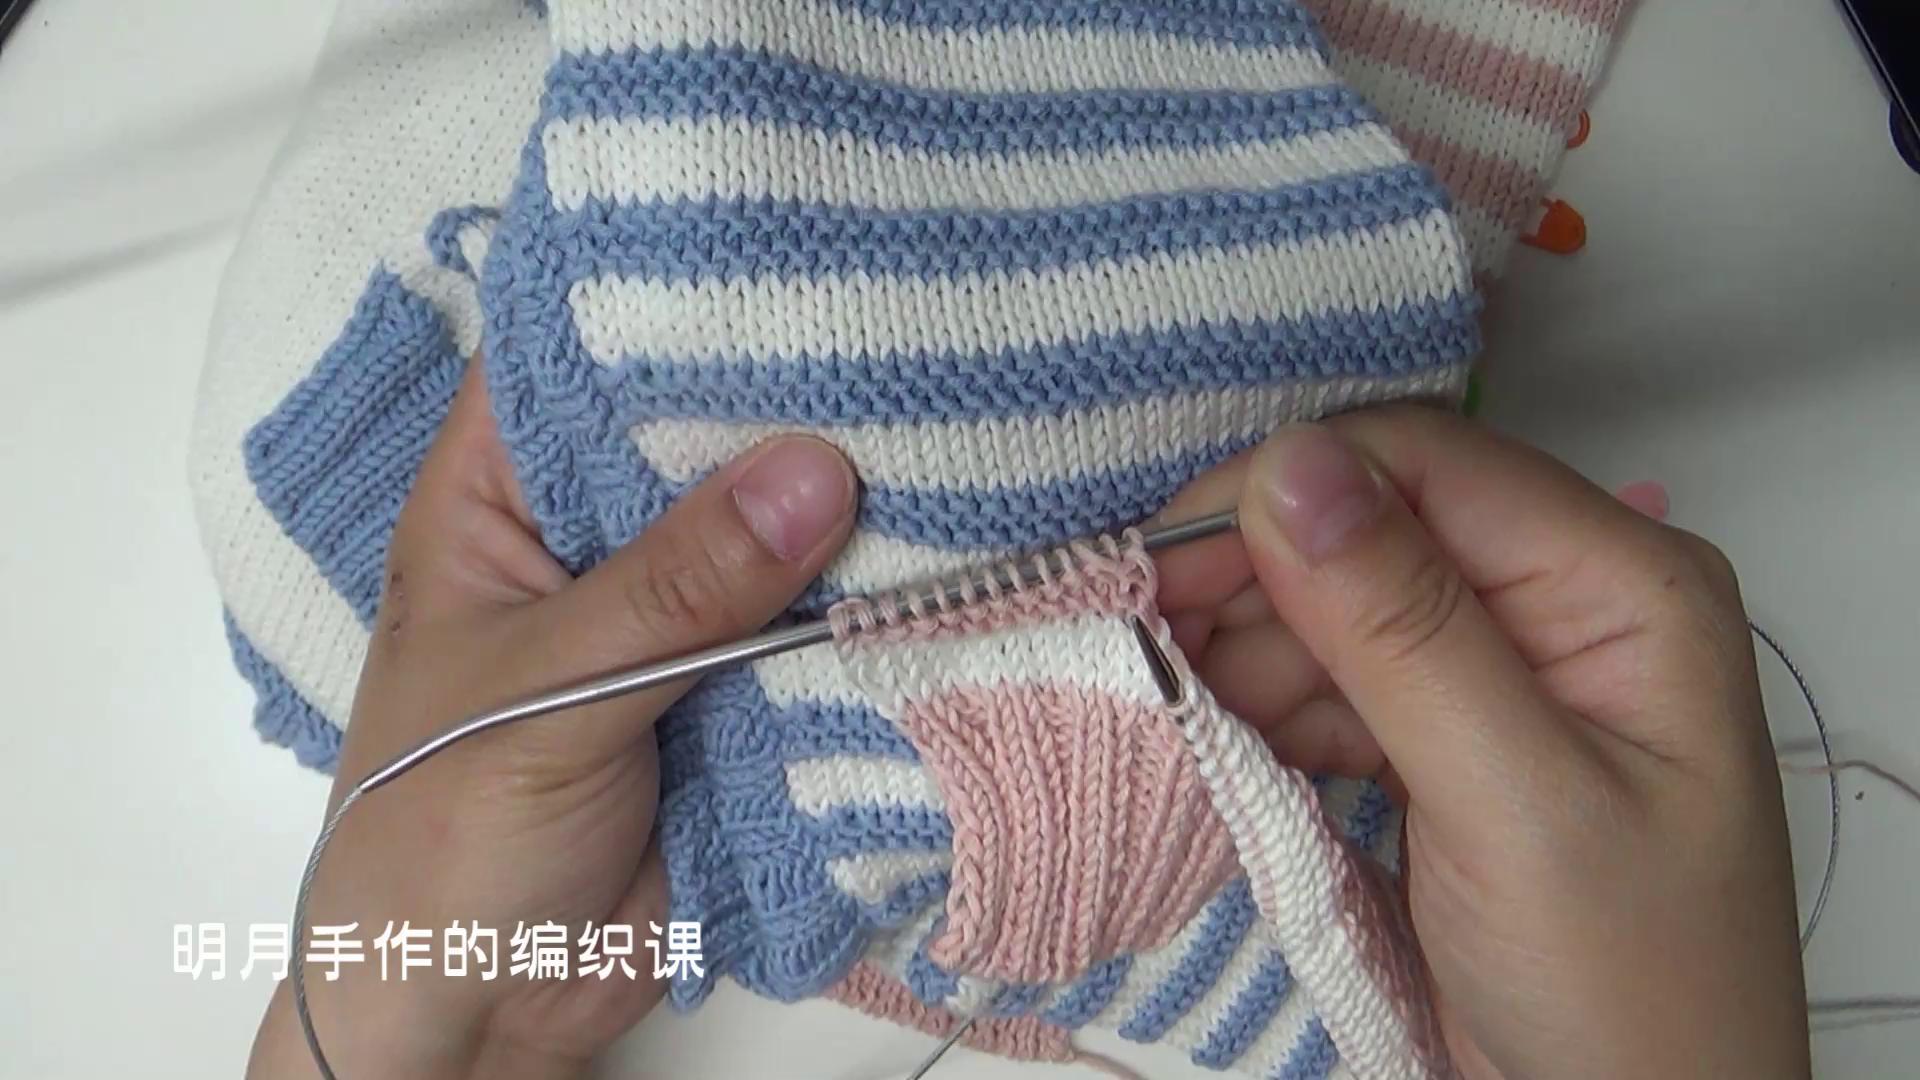 明月手作的编织店连体衣编织第一集裤腿的编织和连接编织方法